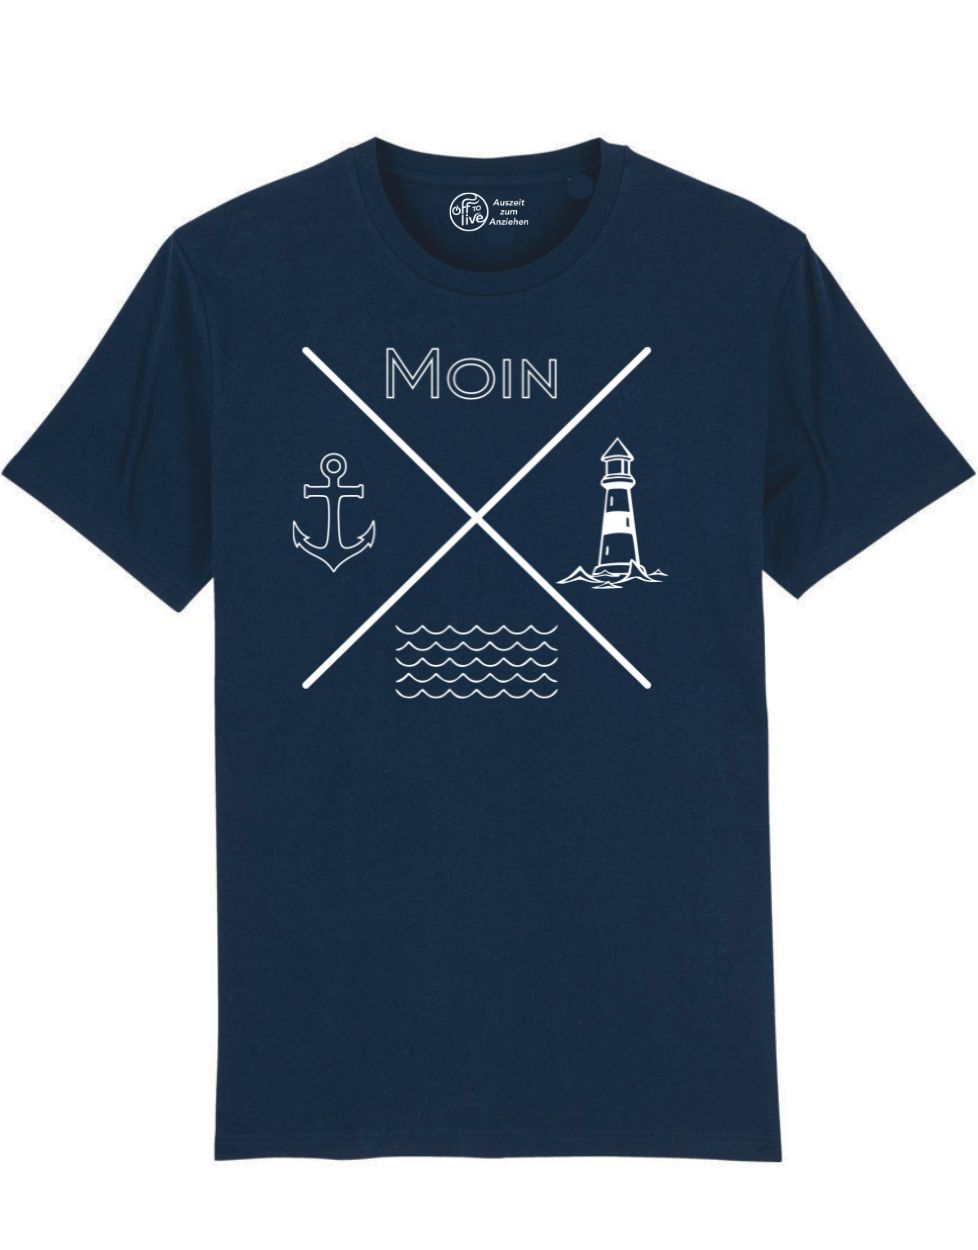 t-Shirt Moin Anker Welle Leuchturm Grafik weiß auf navy bio Baumwolle